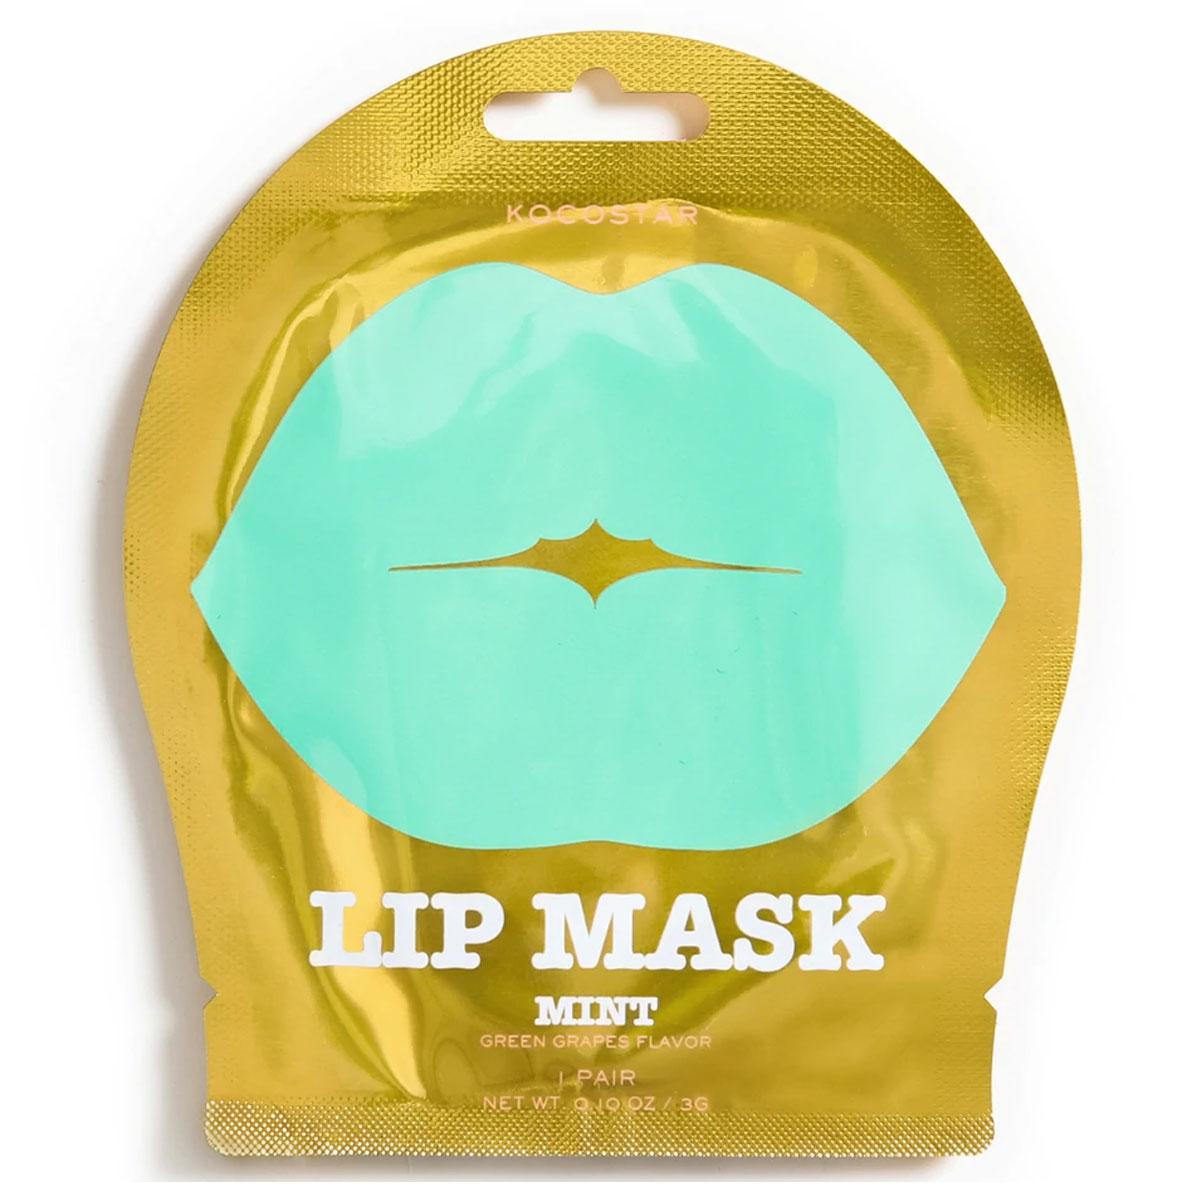 ماسک لب - Lip mask MINT